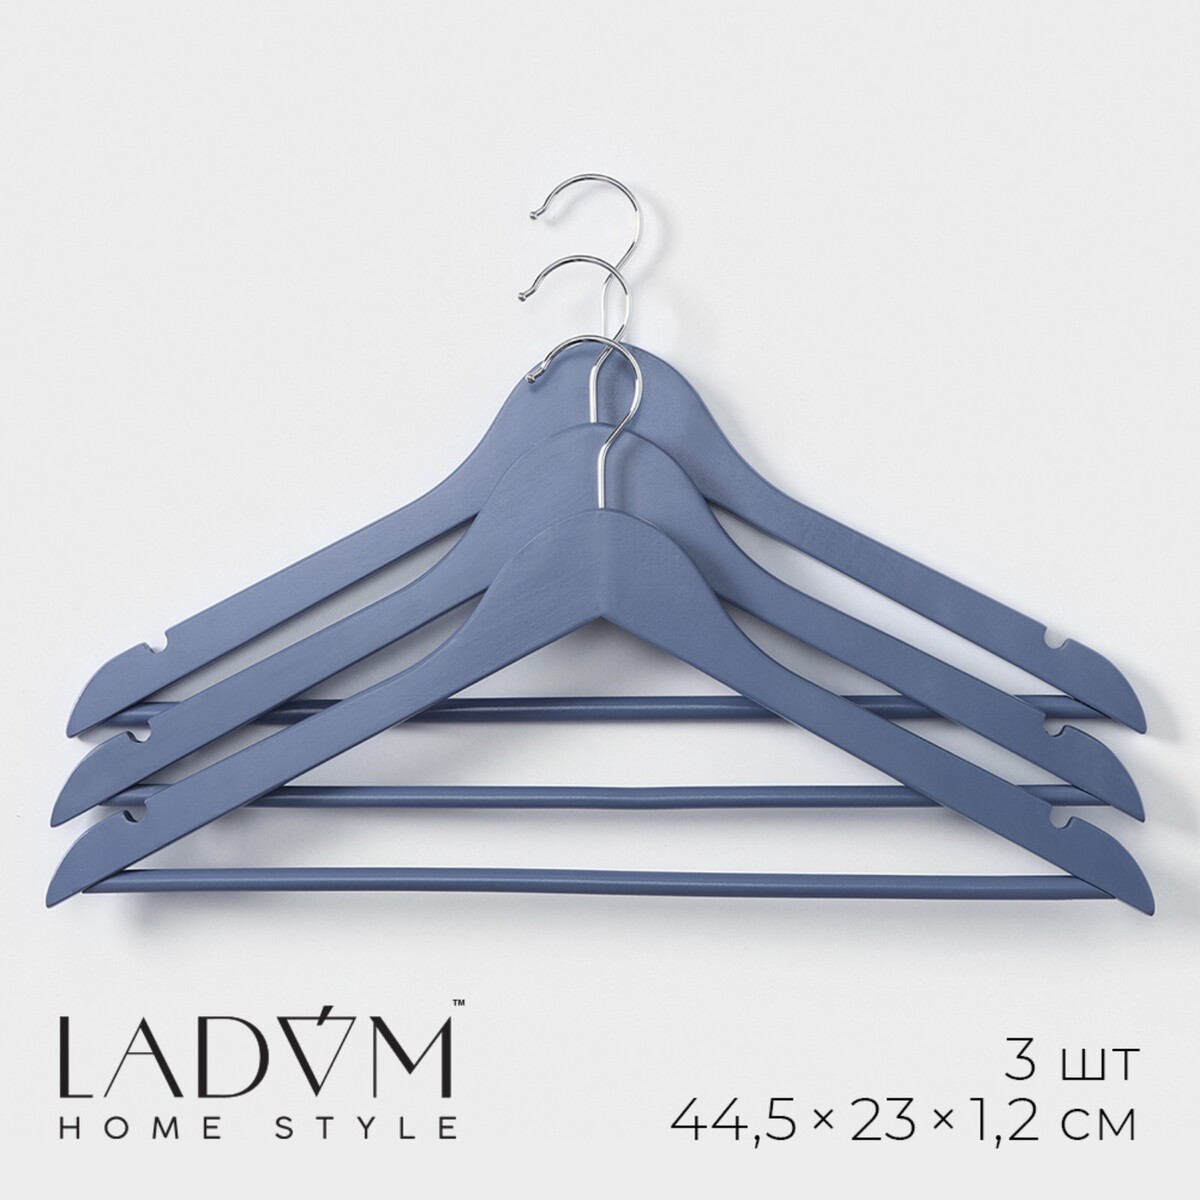 Плечики - вешалки для одежды деревянные ladо́m brillant, 44,5×23×1,2 см, 3 шт, цвет синий плечики вешалка для одежды ladо́m laconique 42×19 5×1см